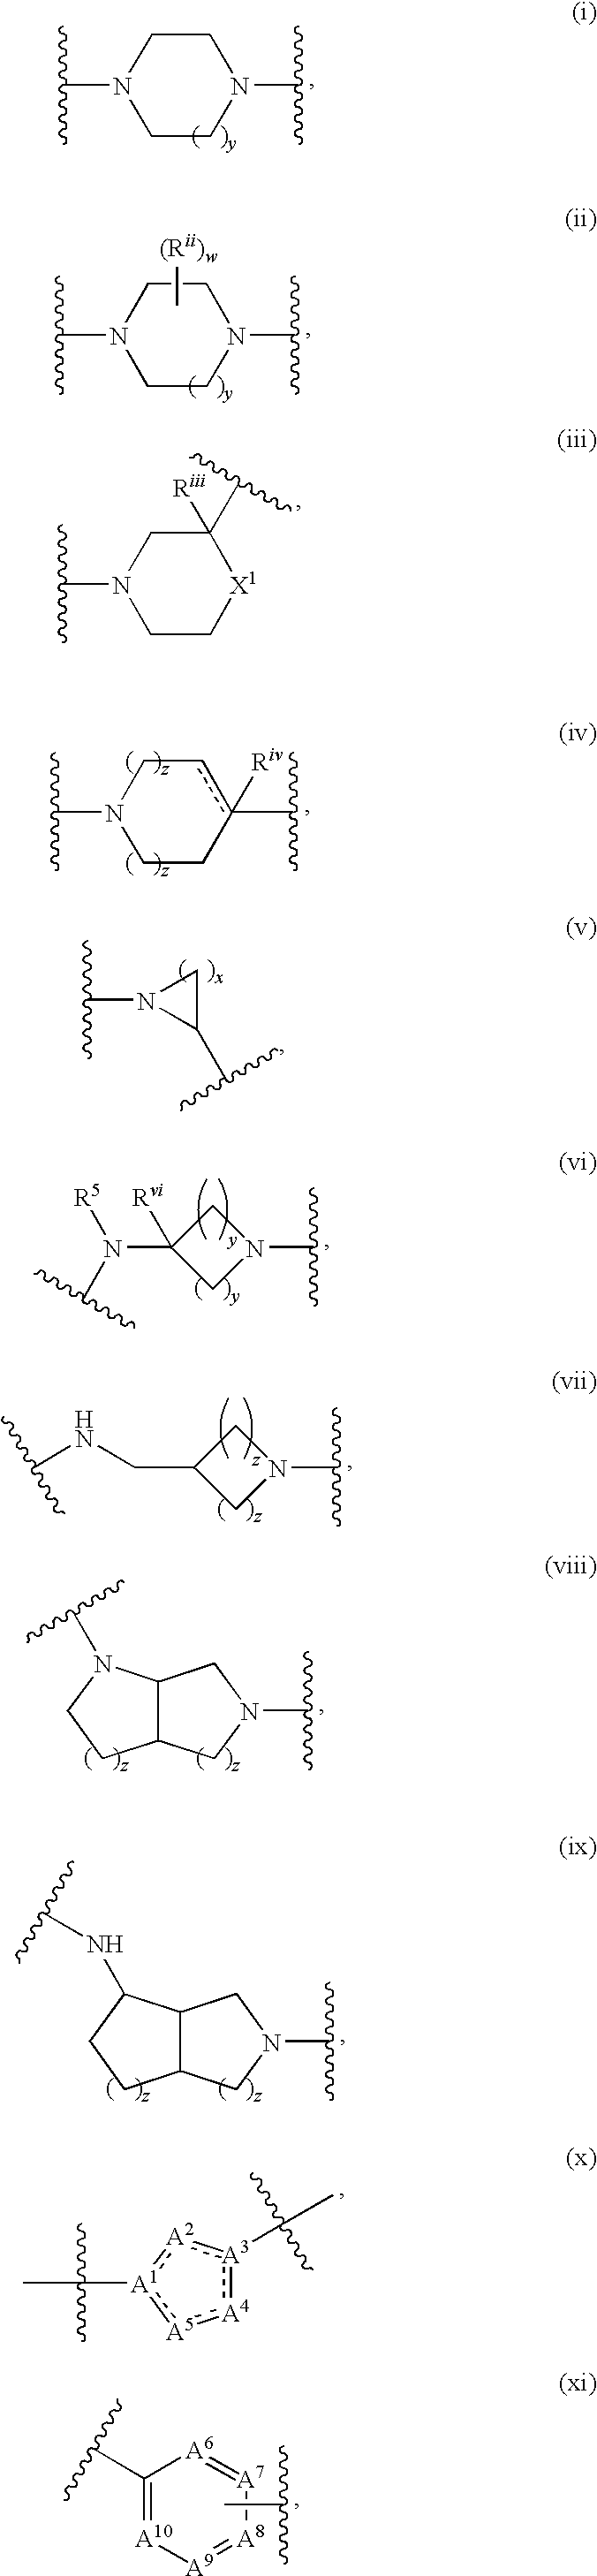 Novel compounds as calcium channel blockers